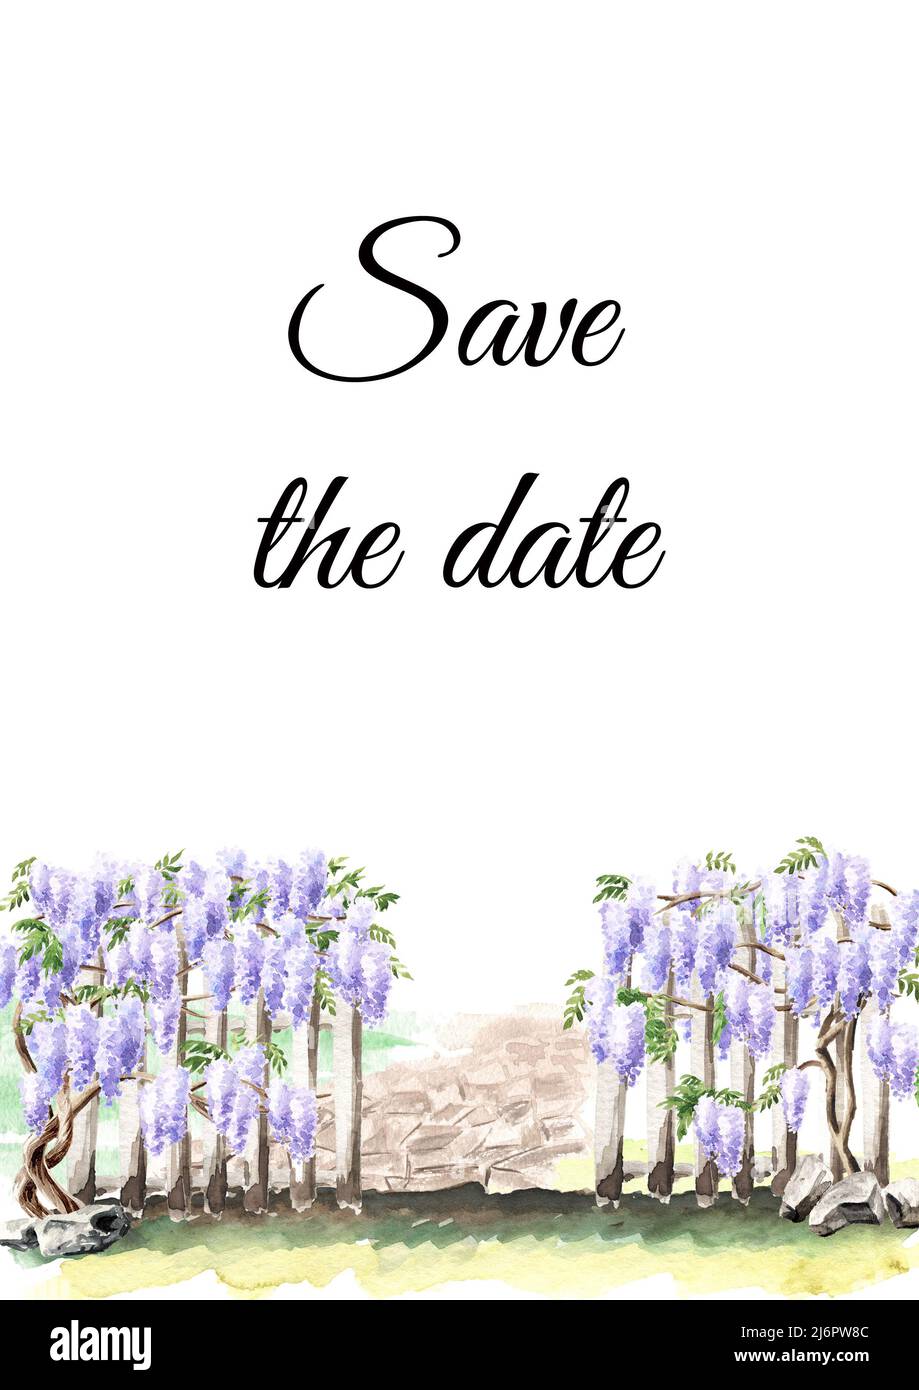 Clôture avec une plante de floraison de Wisteria grimpant, conservez la carte de date. Illustration aquarelle dessinée à la main isolée sur fond blanc Banque D'Images